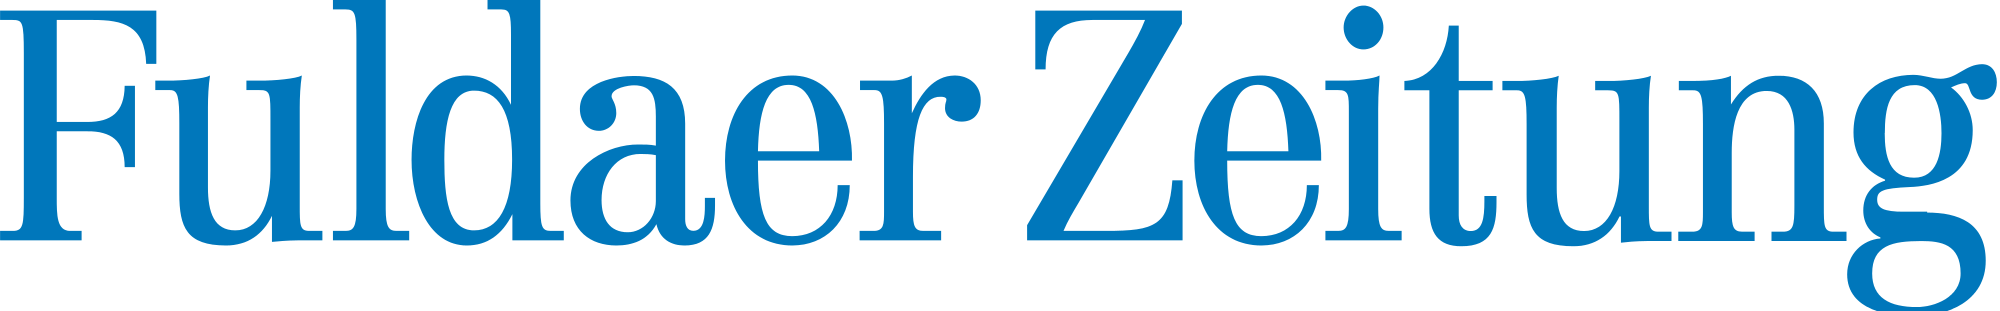 Fuldaer_Zeitung_Logo.svg